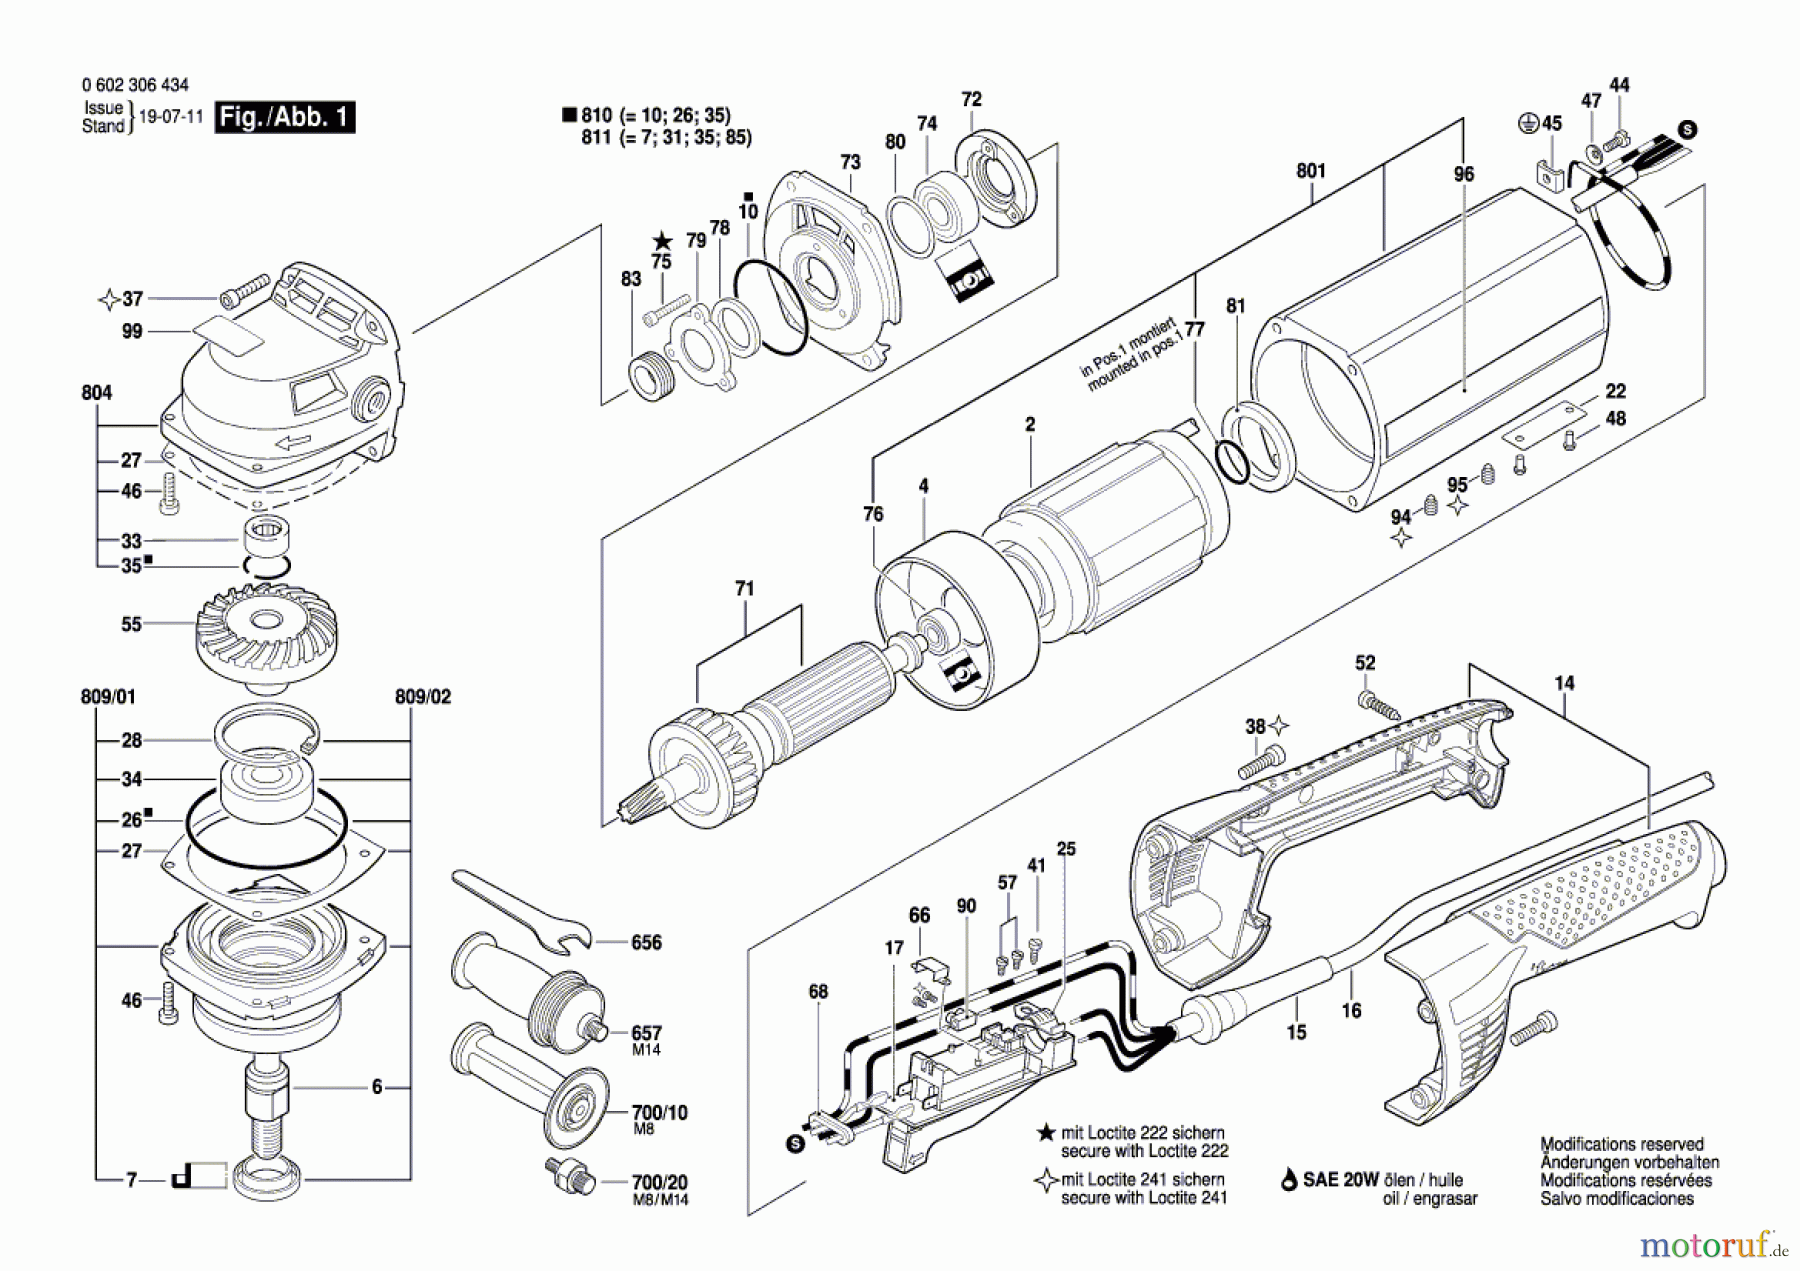  Bosch Werkzeug Winkelpolierer ---- Seite 1